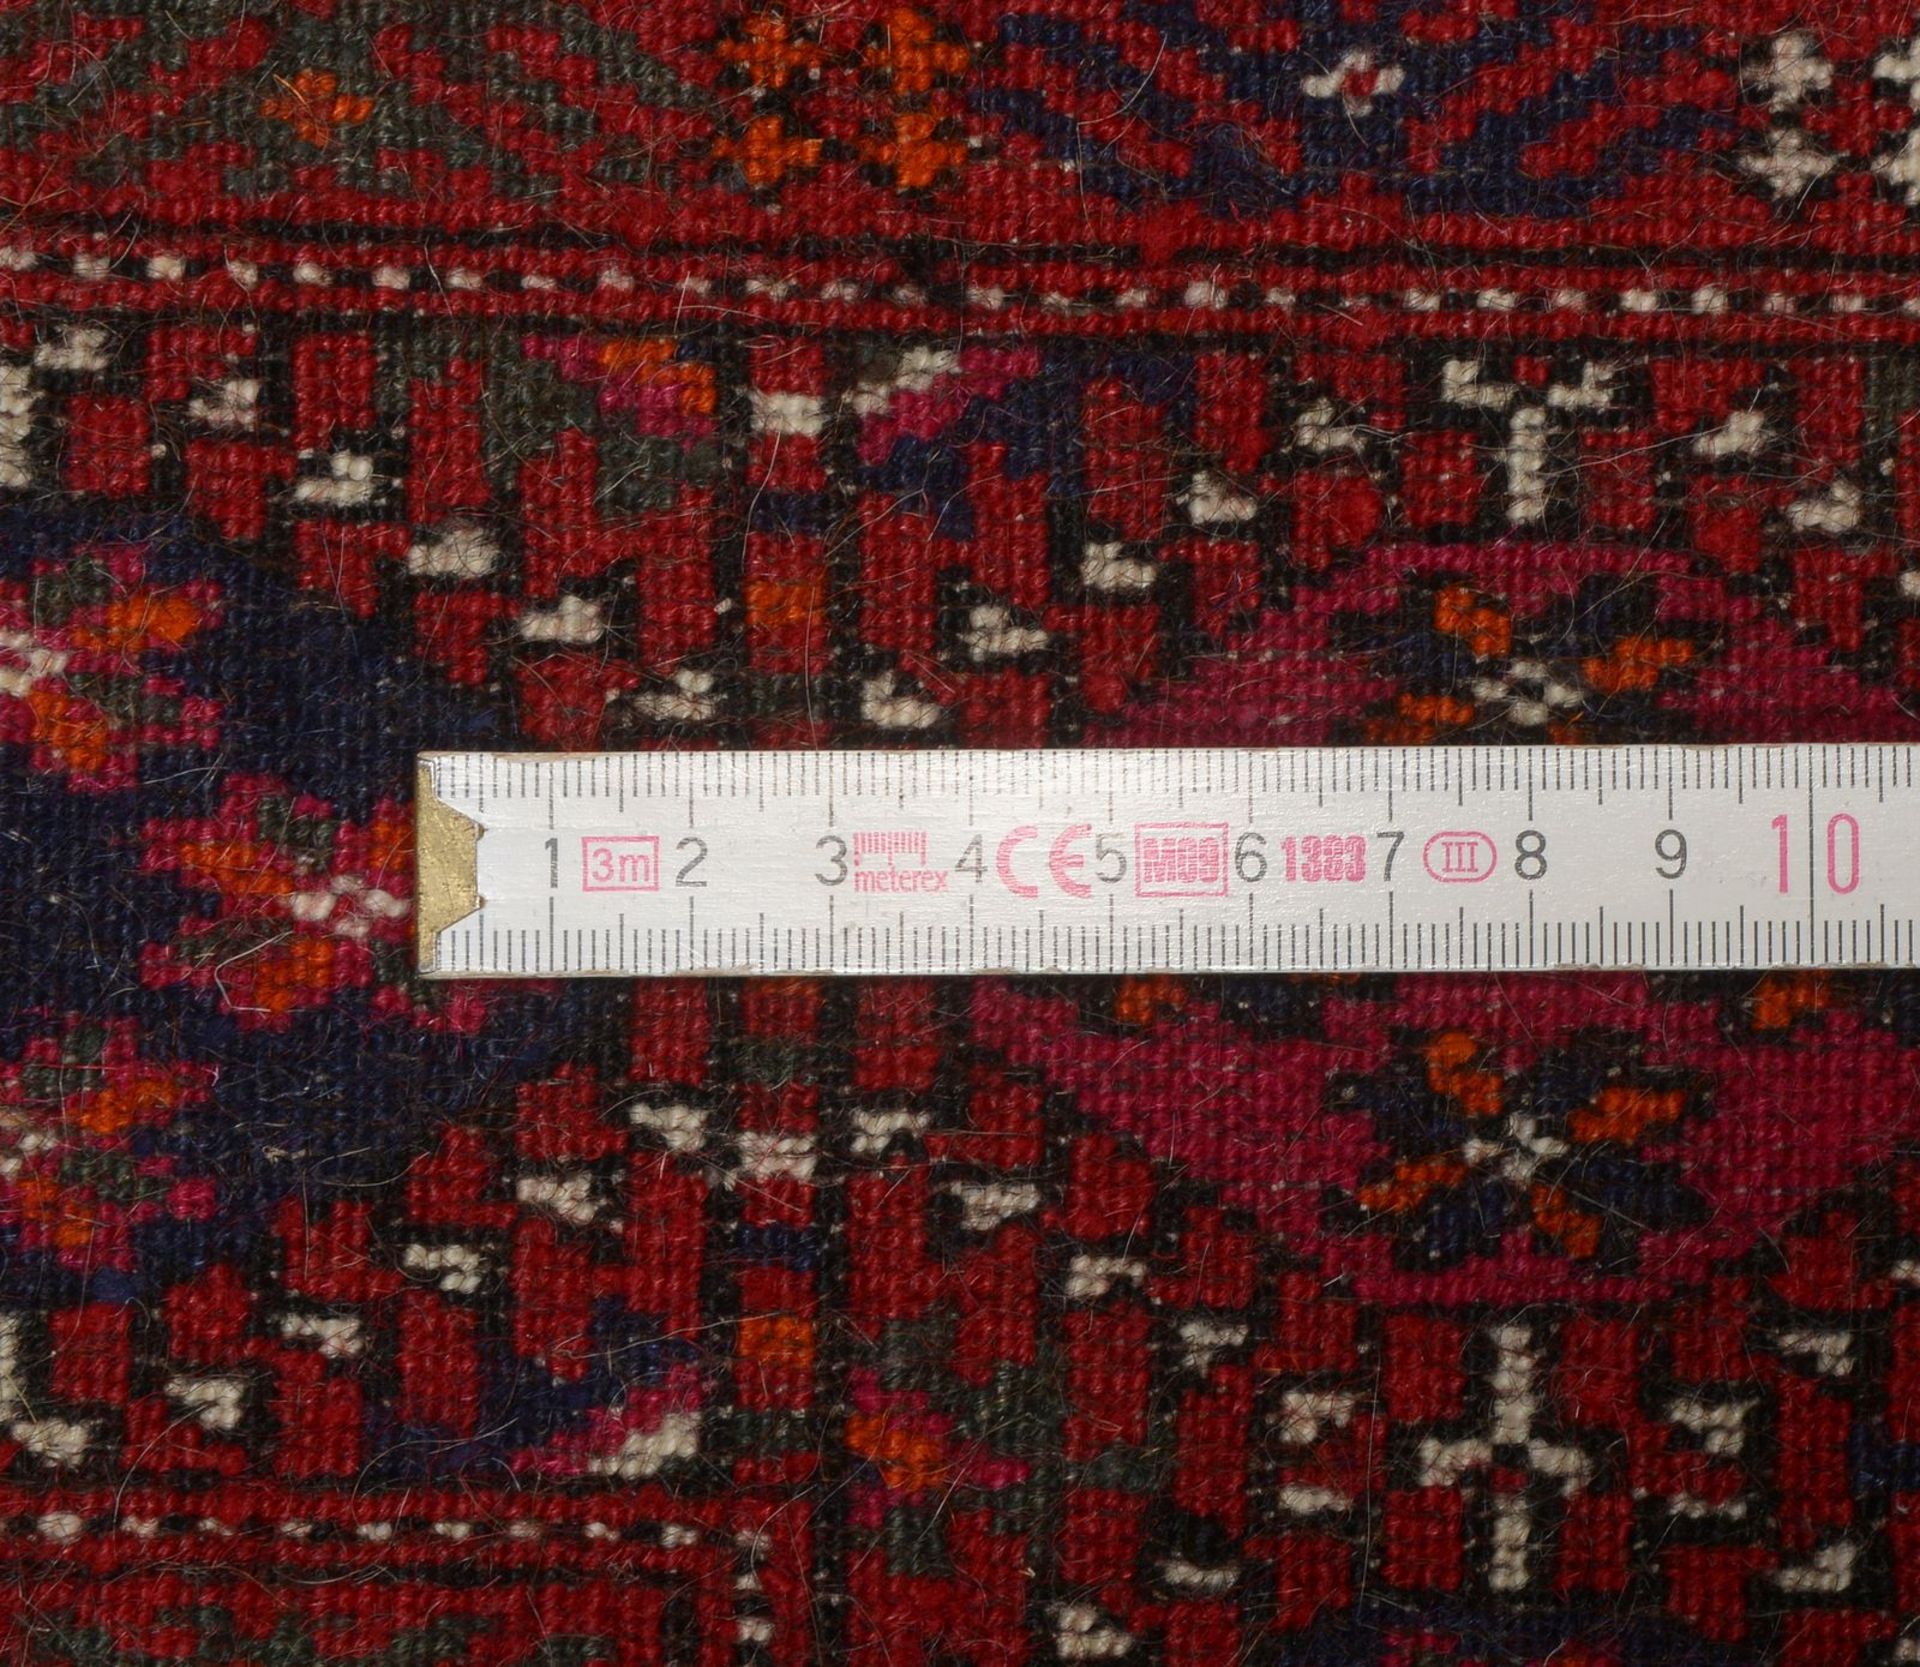 Turkman-Orientteppich, feine Knüpfung, Flor in gutem Zustand; Maße 225 x 140 cm - Bild 2 aus 2